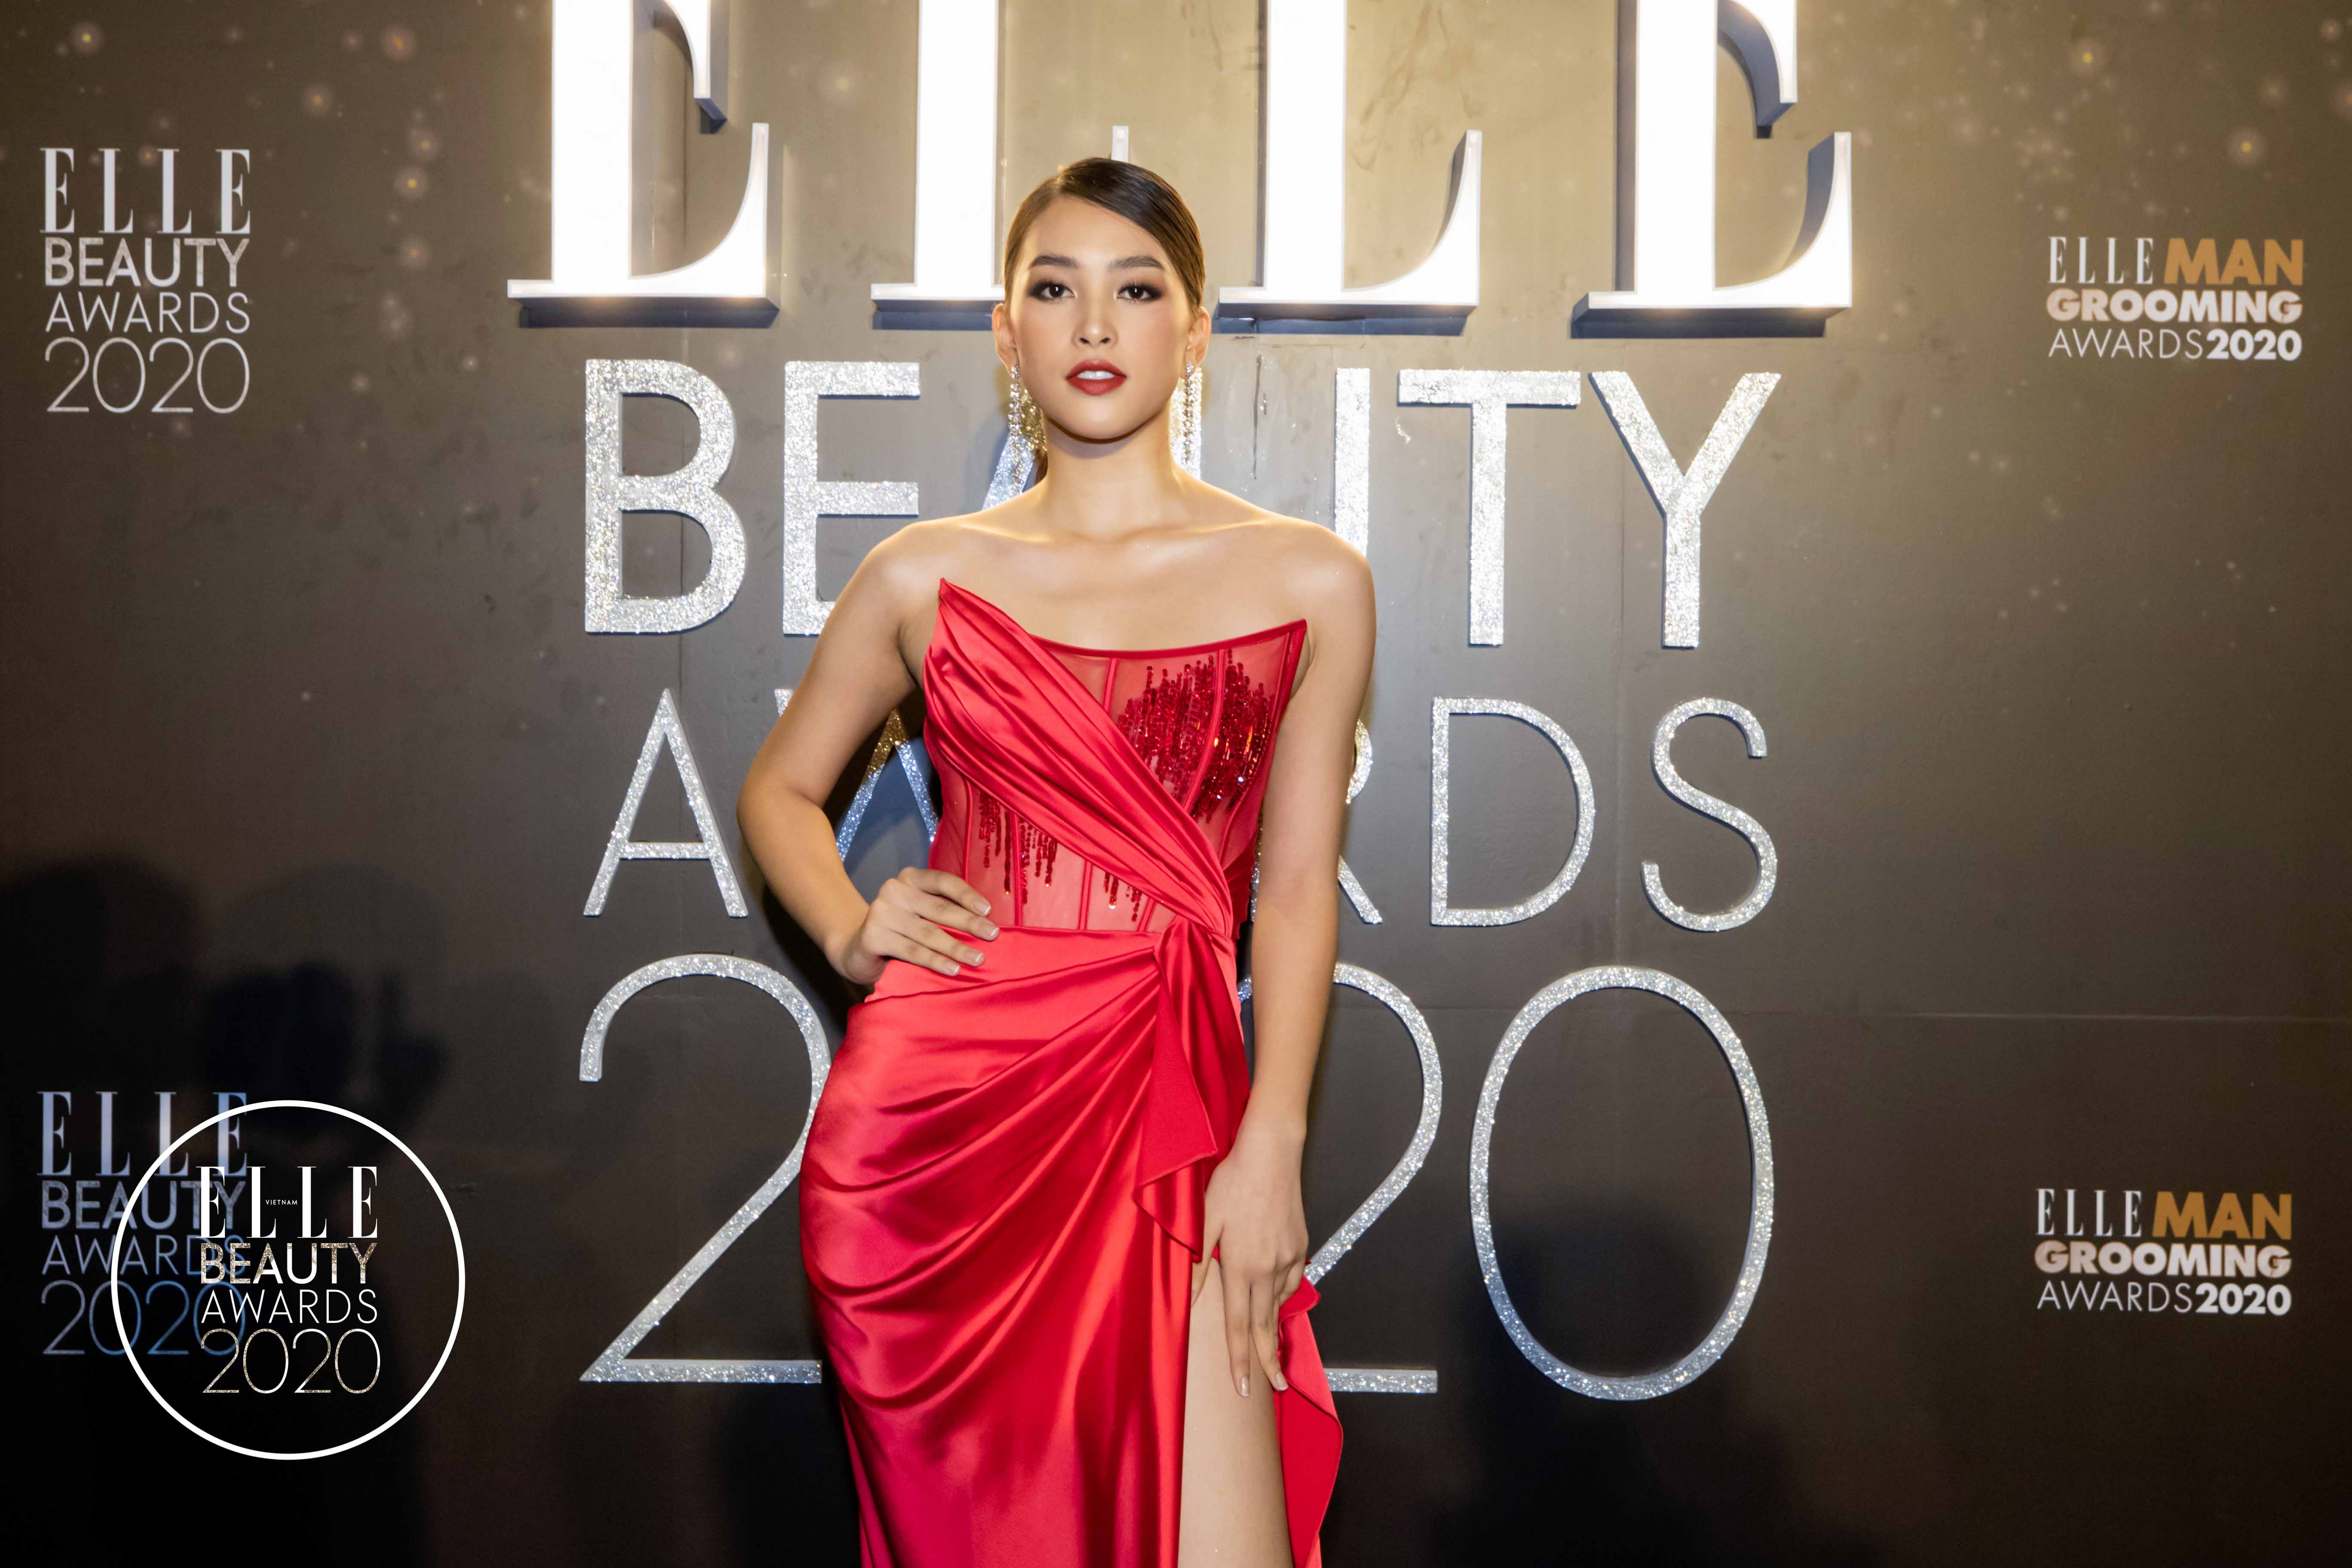 tiểu vy trên thảm đỏ elle beauty awards 2020